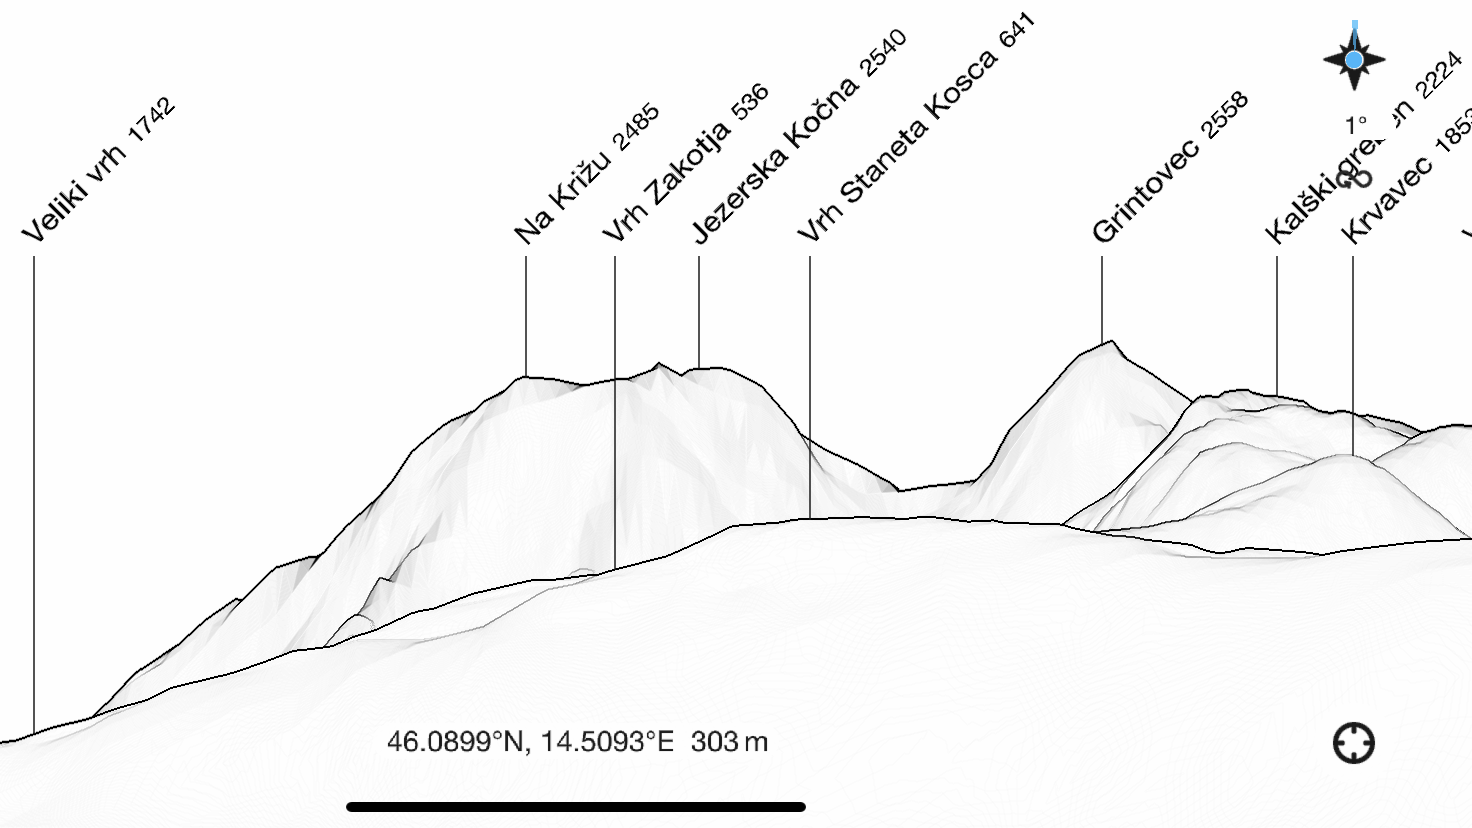 Kamnik alps as seen via the peak finder app